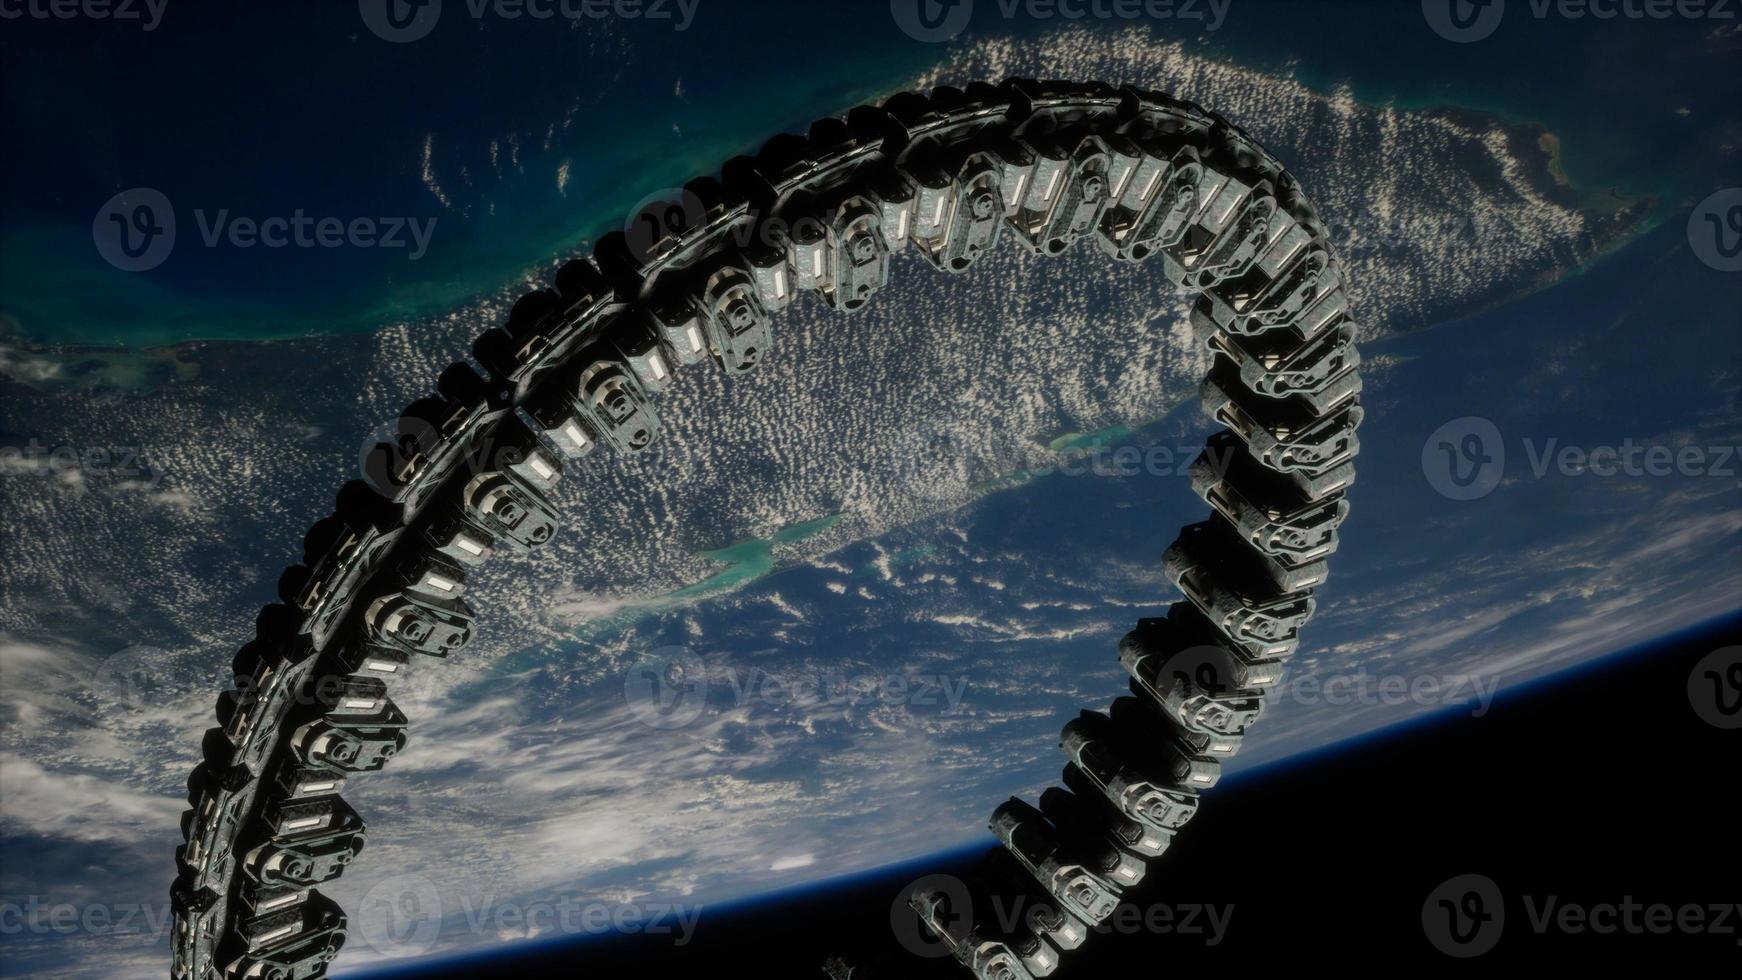 futuristisk rymdstation på jordens bana foto